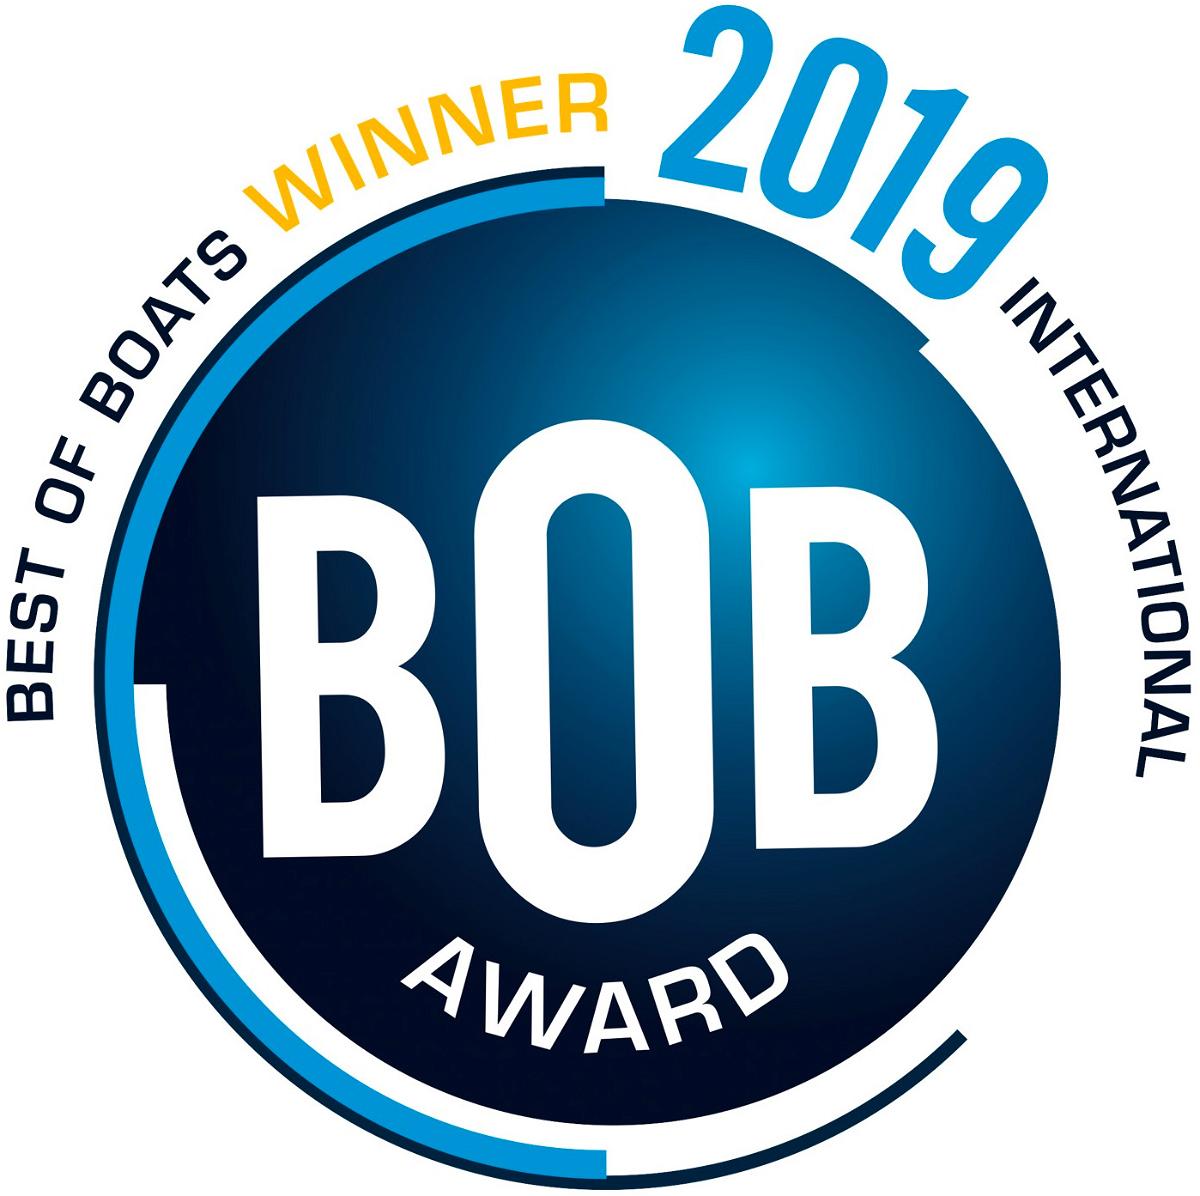 Vinner av Best of boats international 2019